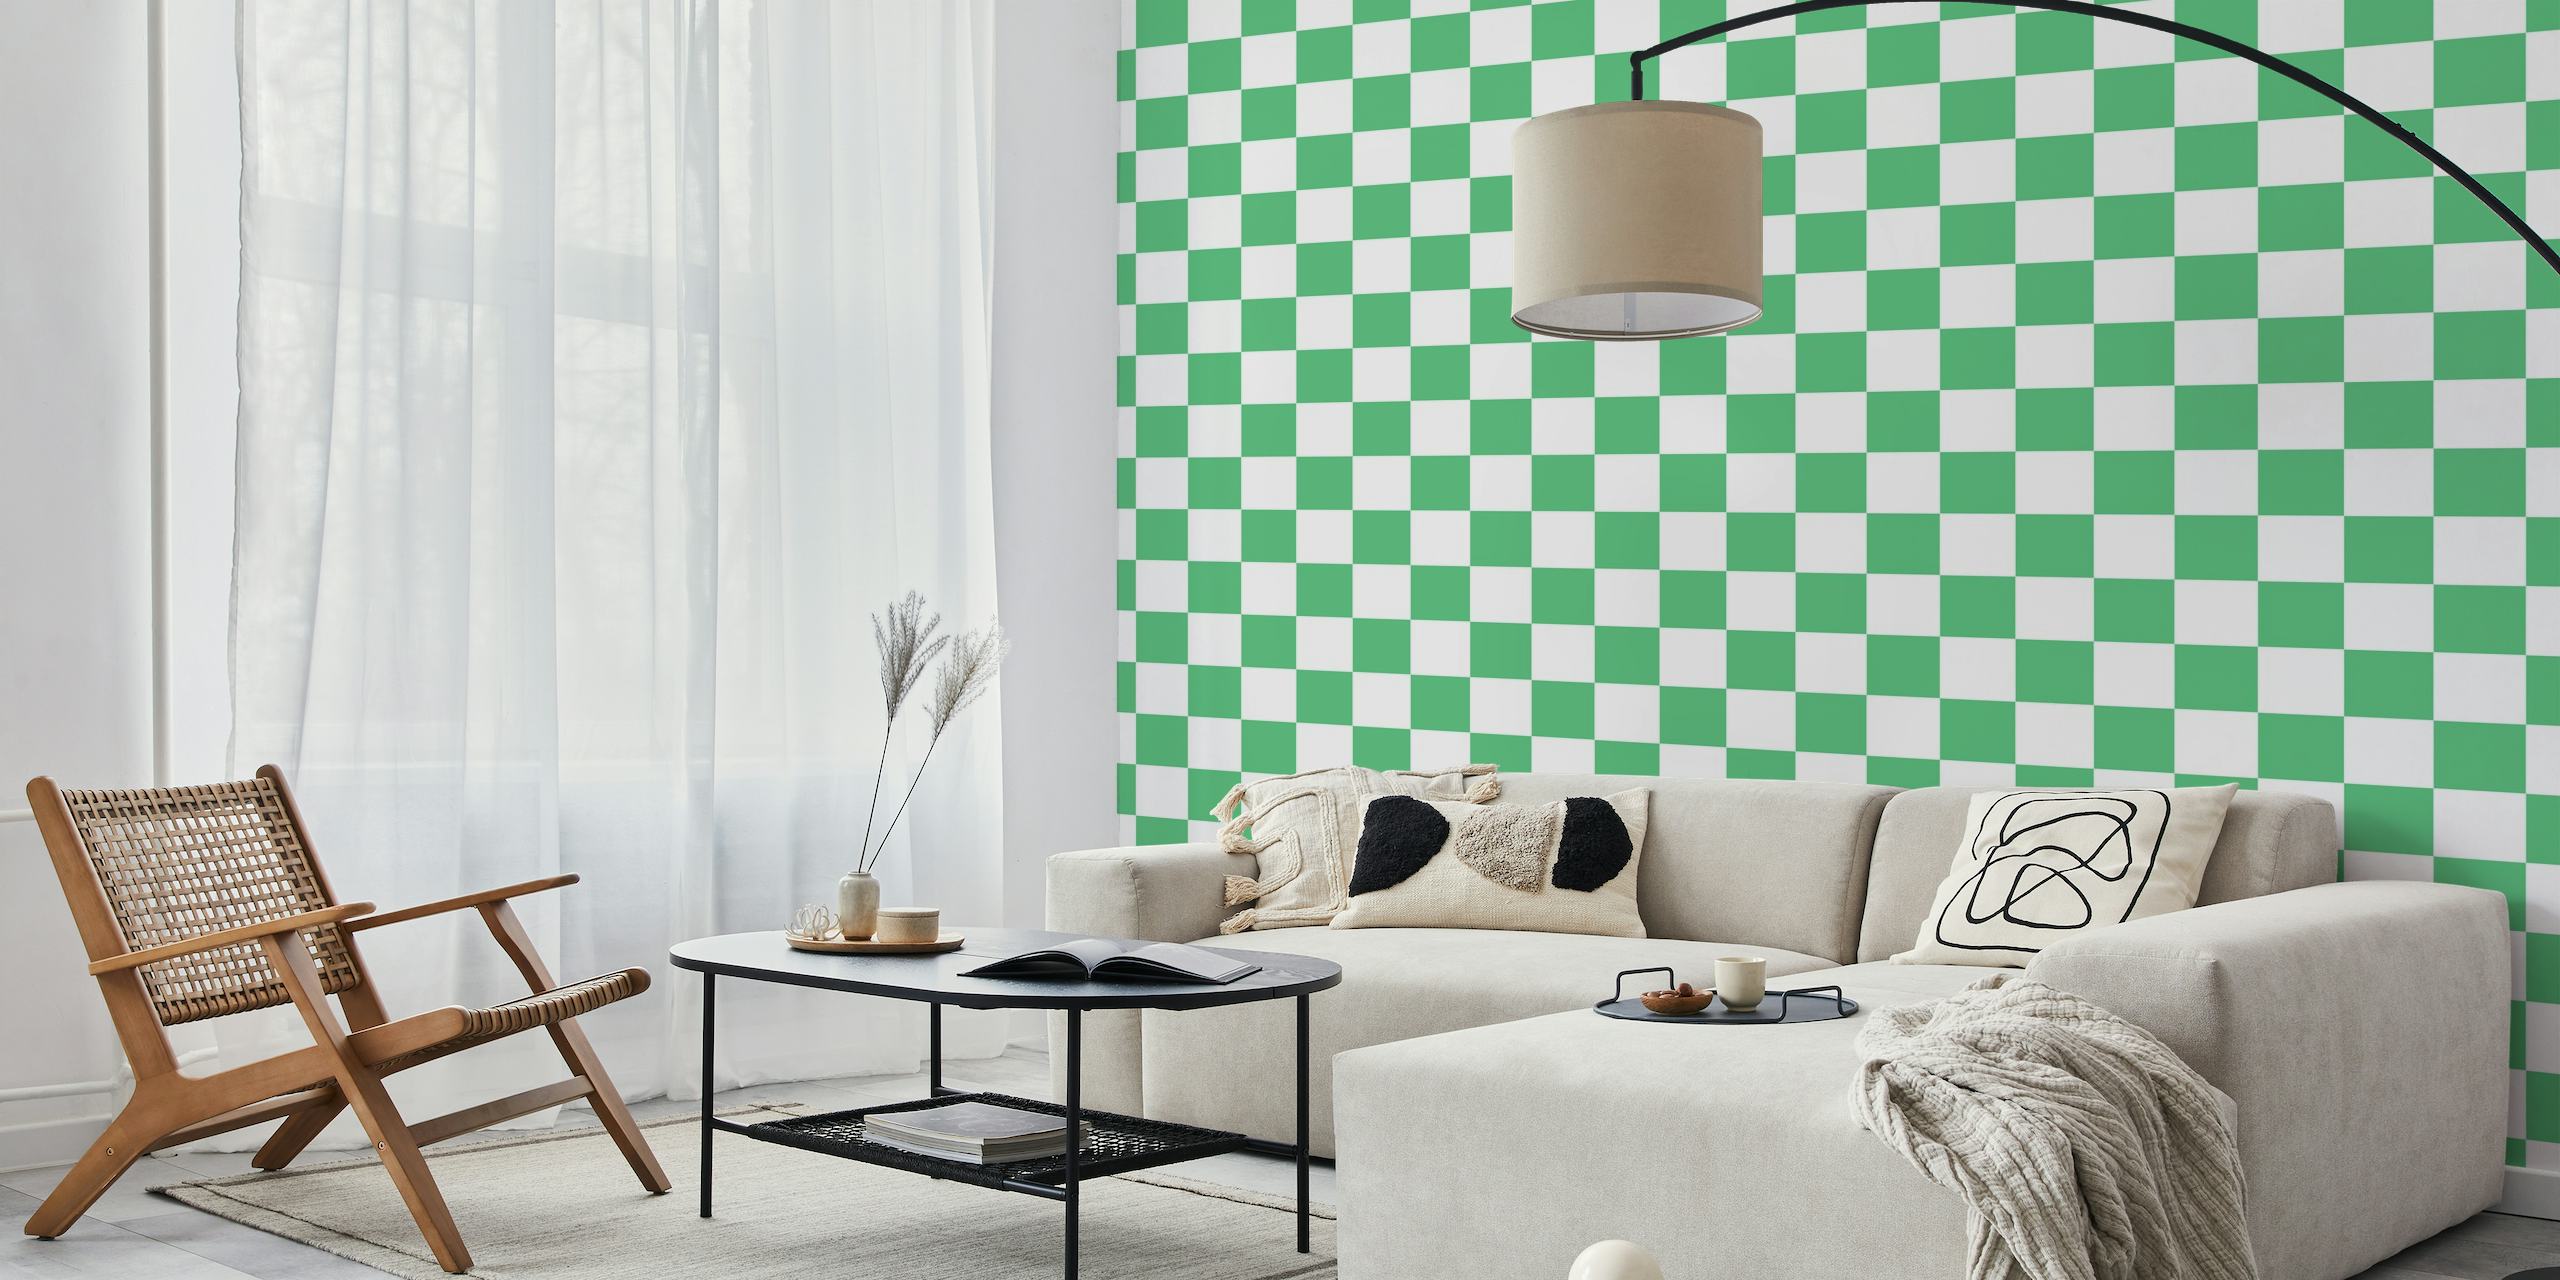 Fotomural vinílico de parede grande com padrão xadrez em verde menta e branco